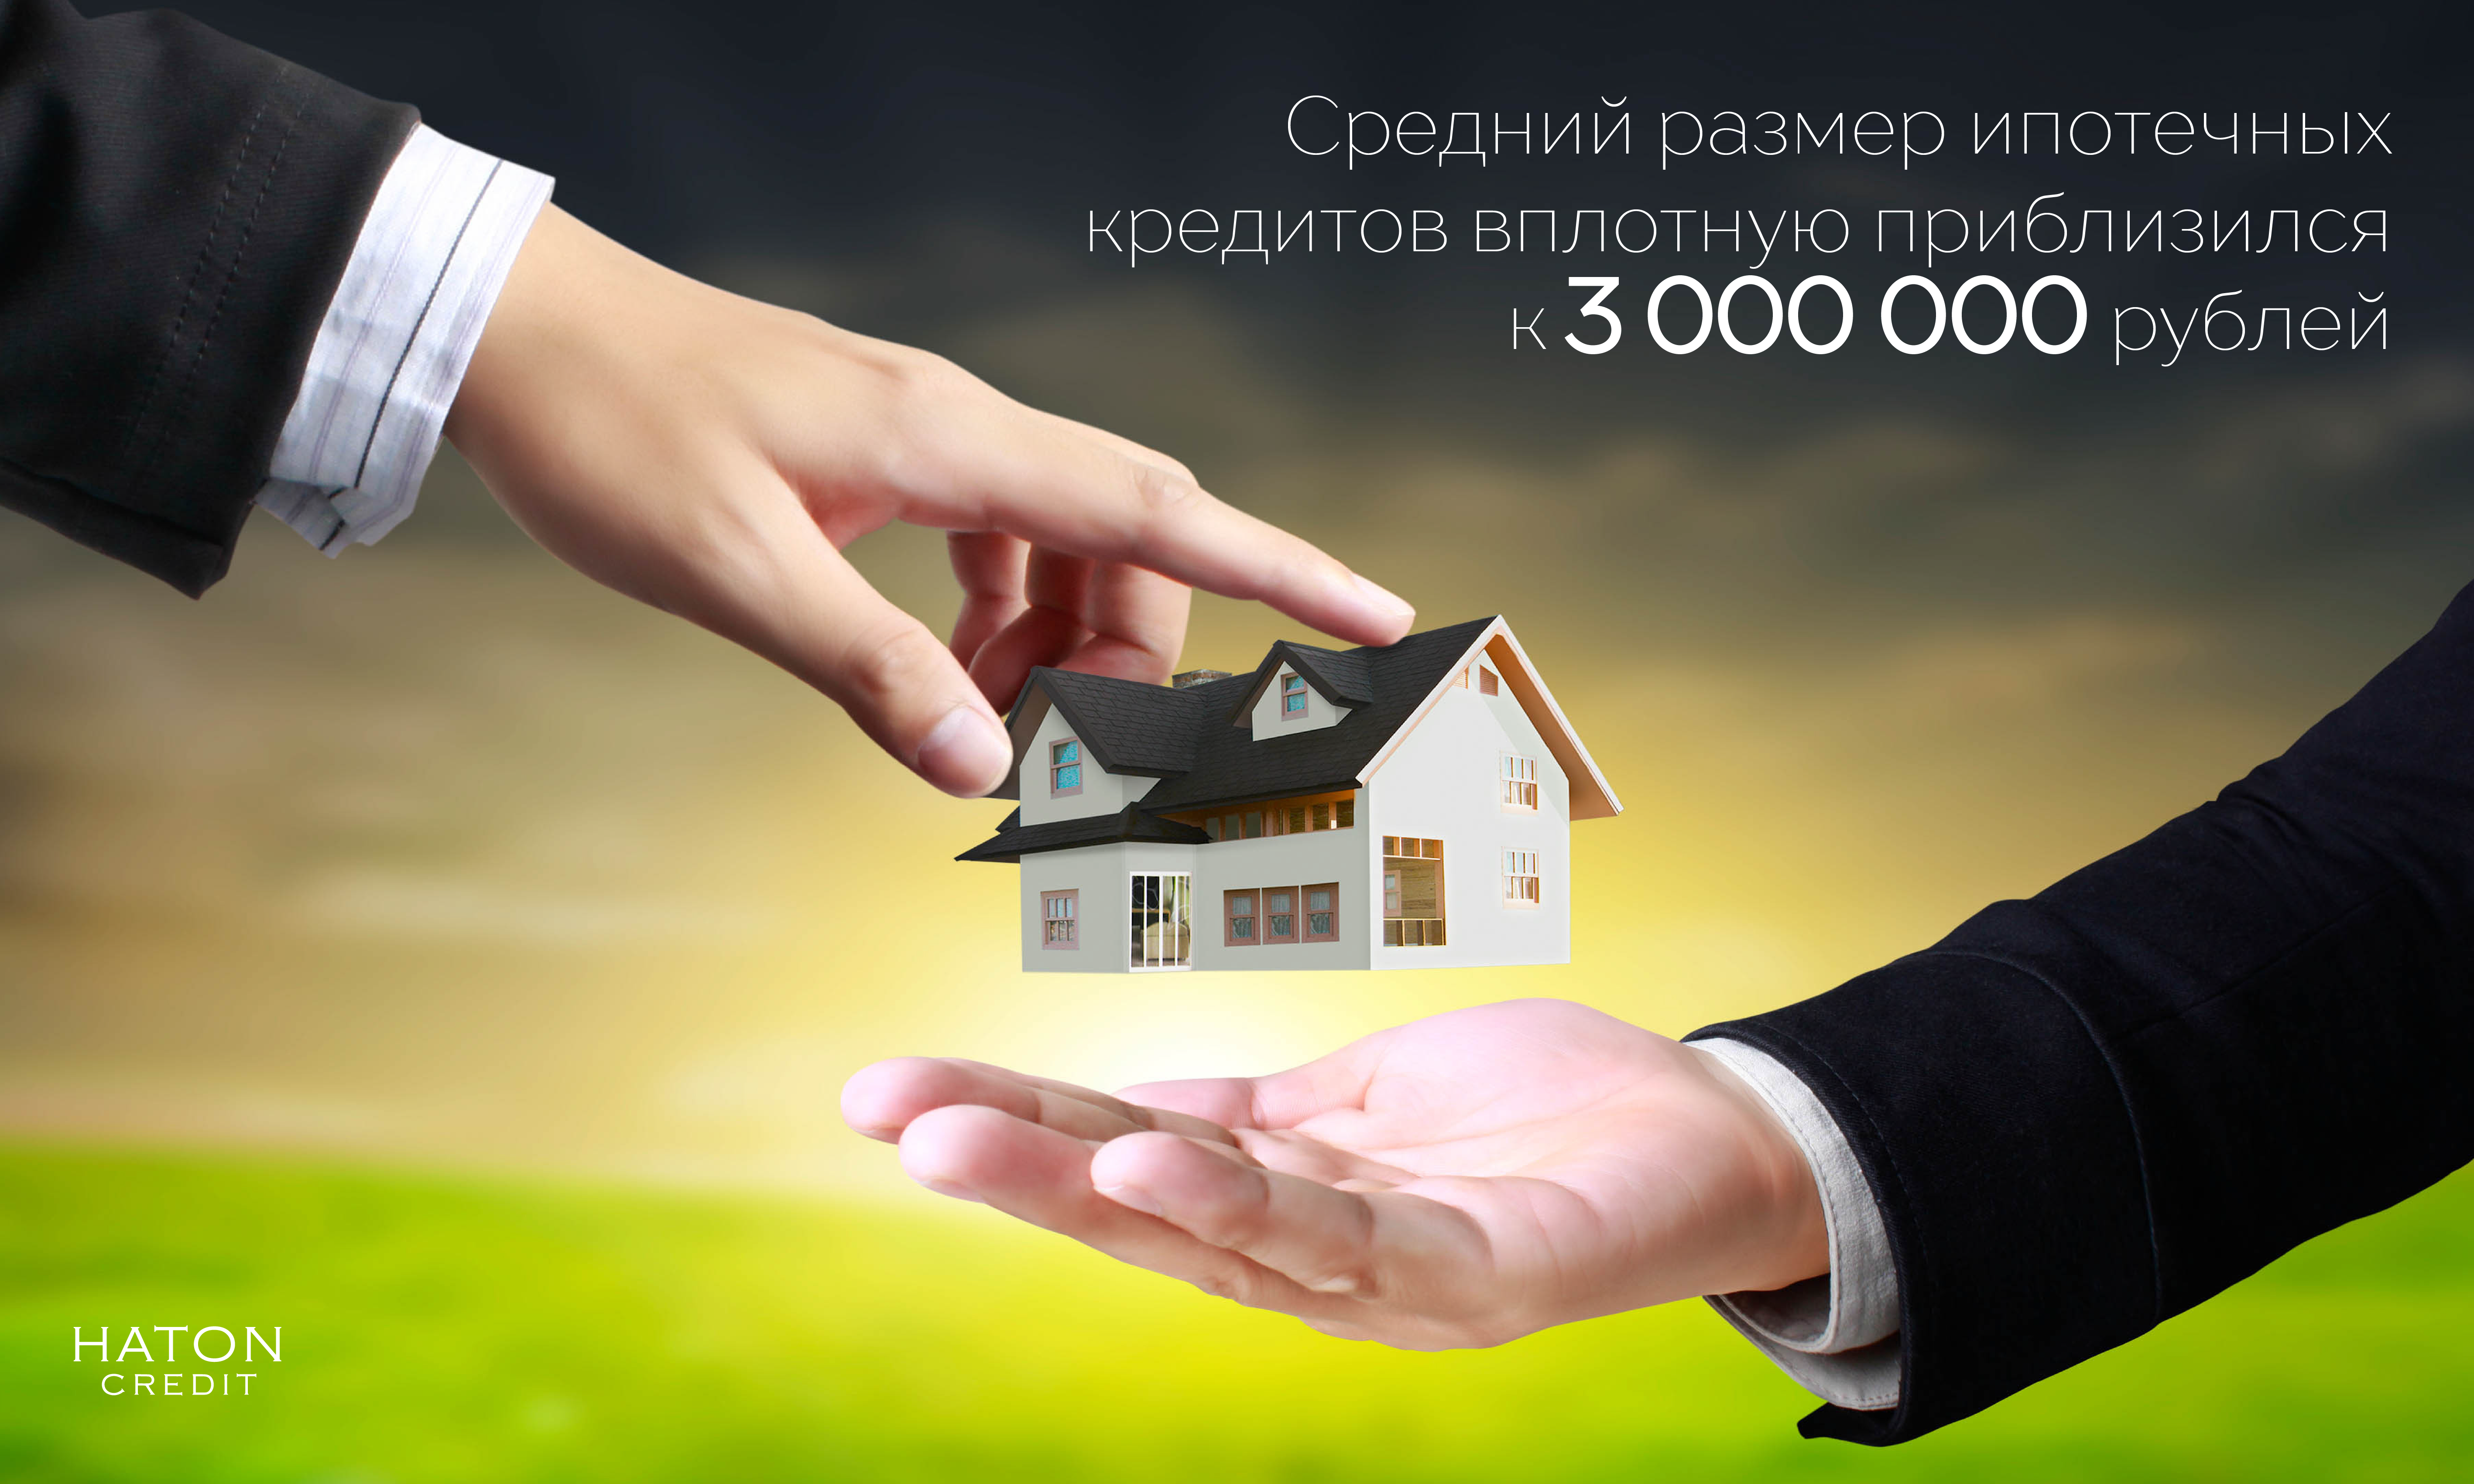 Средний размер ипотечных кредитов вплотную приблизился к 3 млн рублей